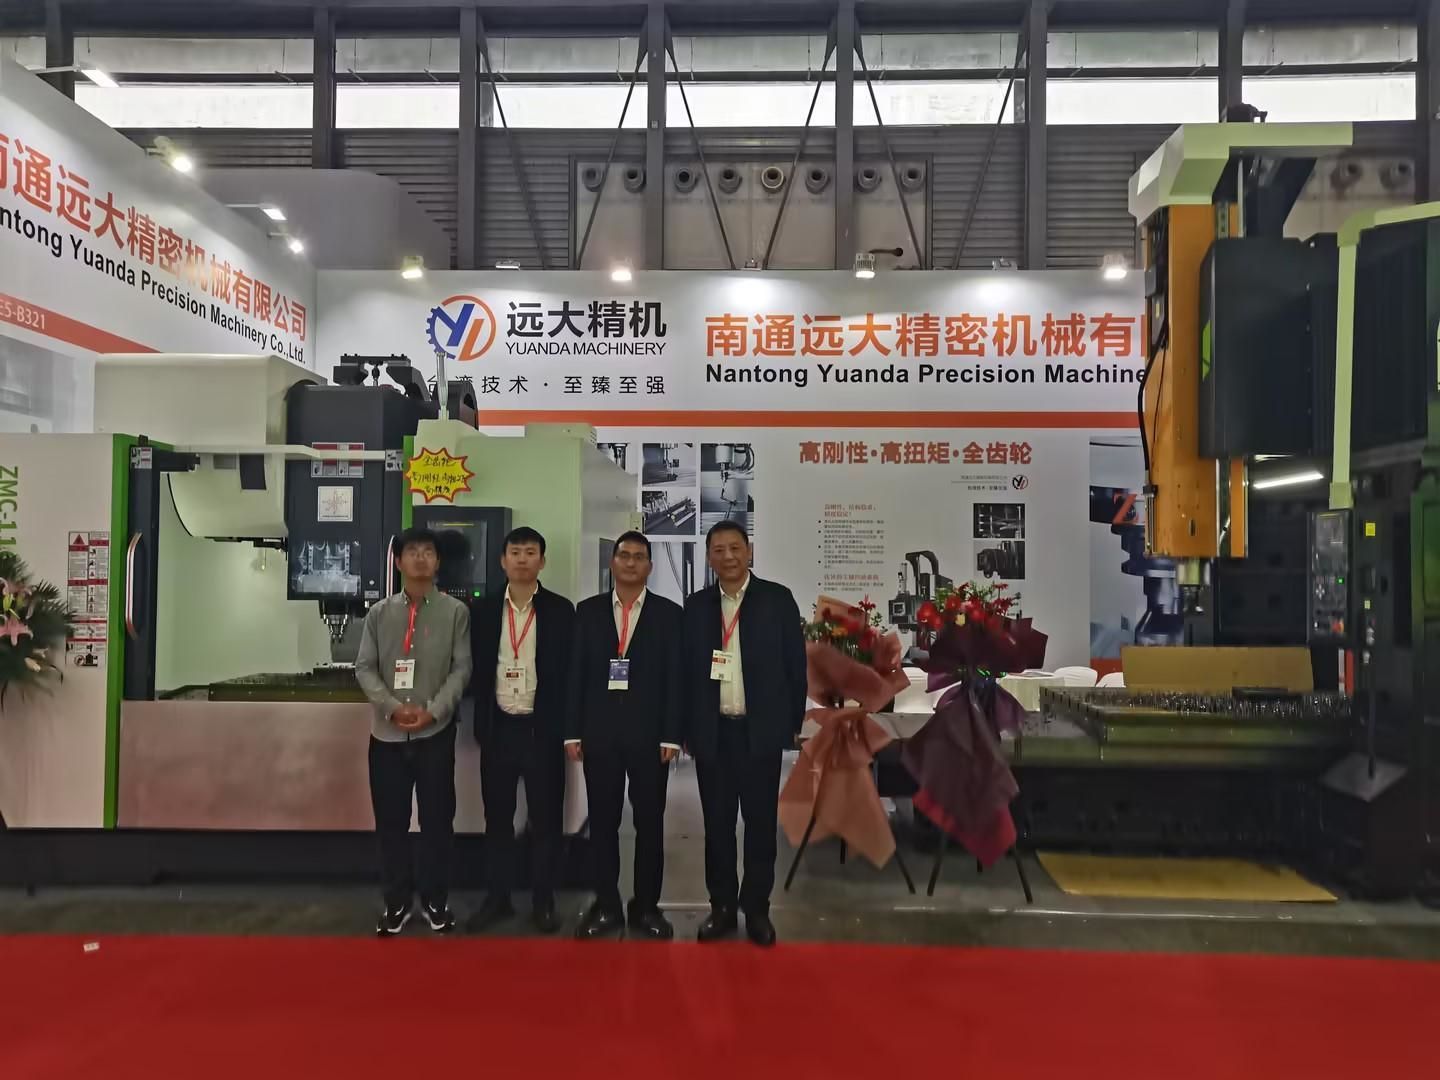 ทัวร์นิทรรศการเครื่องมือเครื่องจักร CNC ประเทศจีน